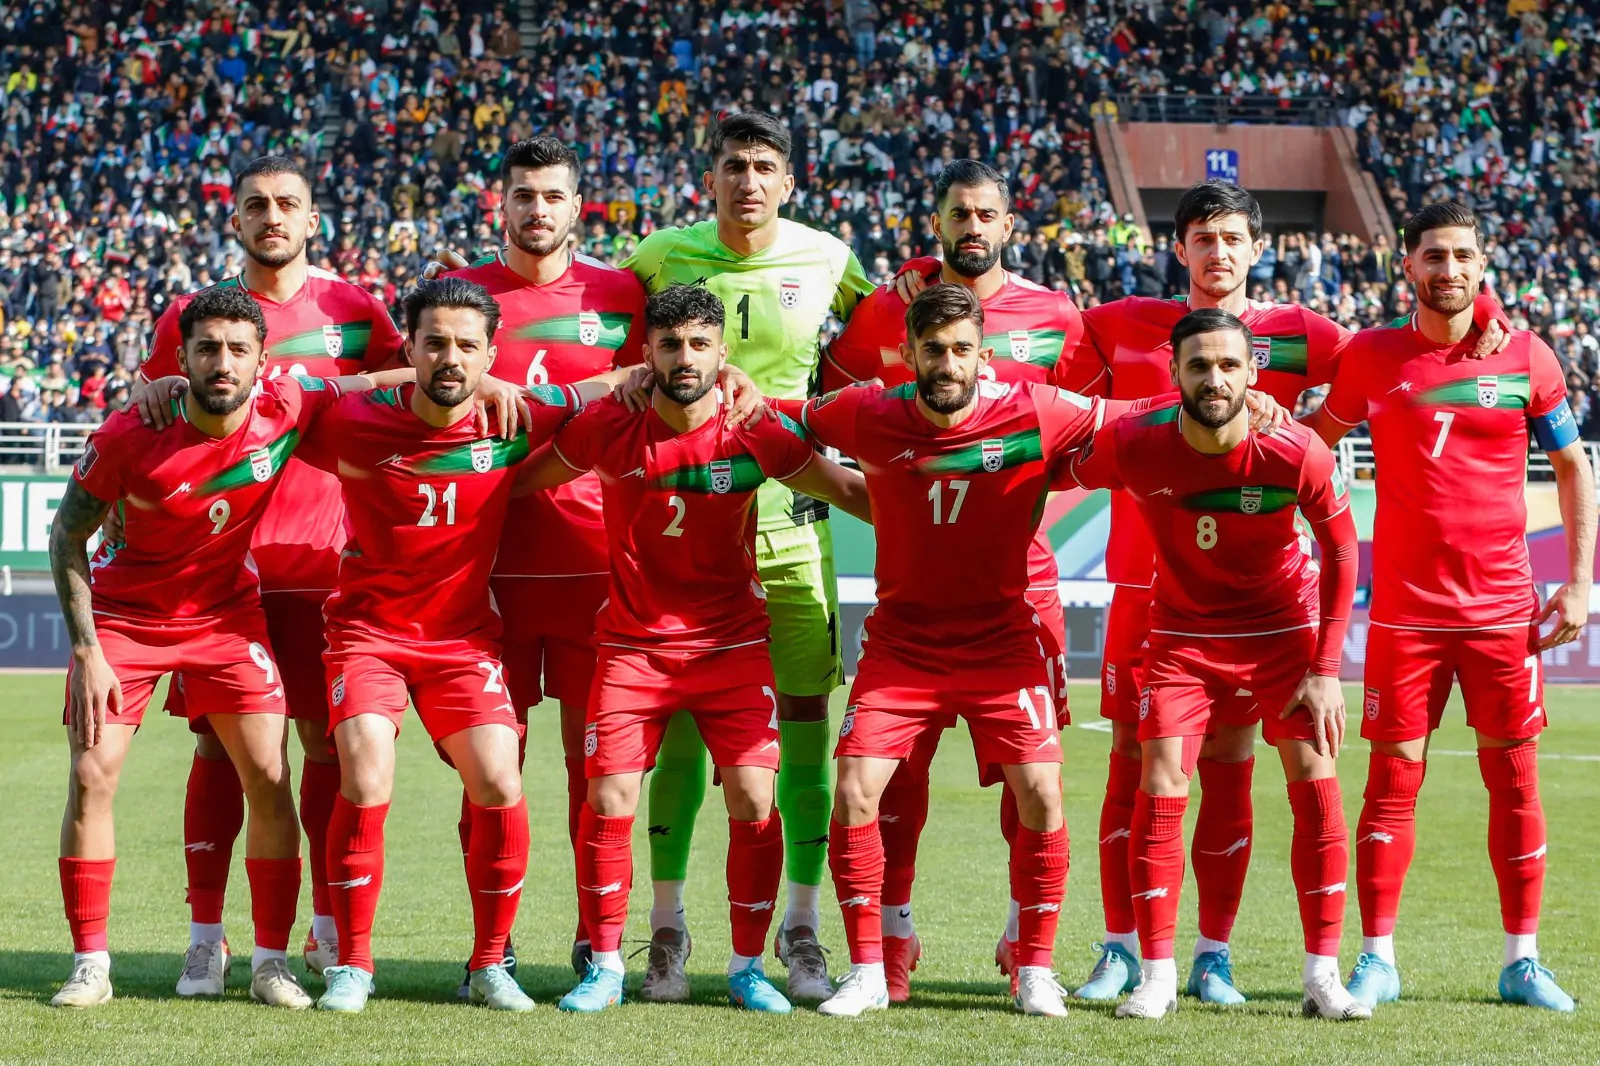 Iran a rischio squalifica dai Mondiali: possibile ripescaggio dell’Italia?